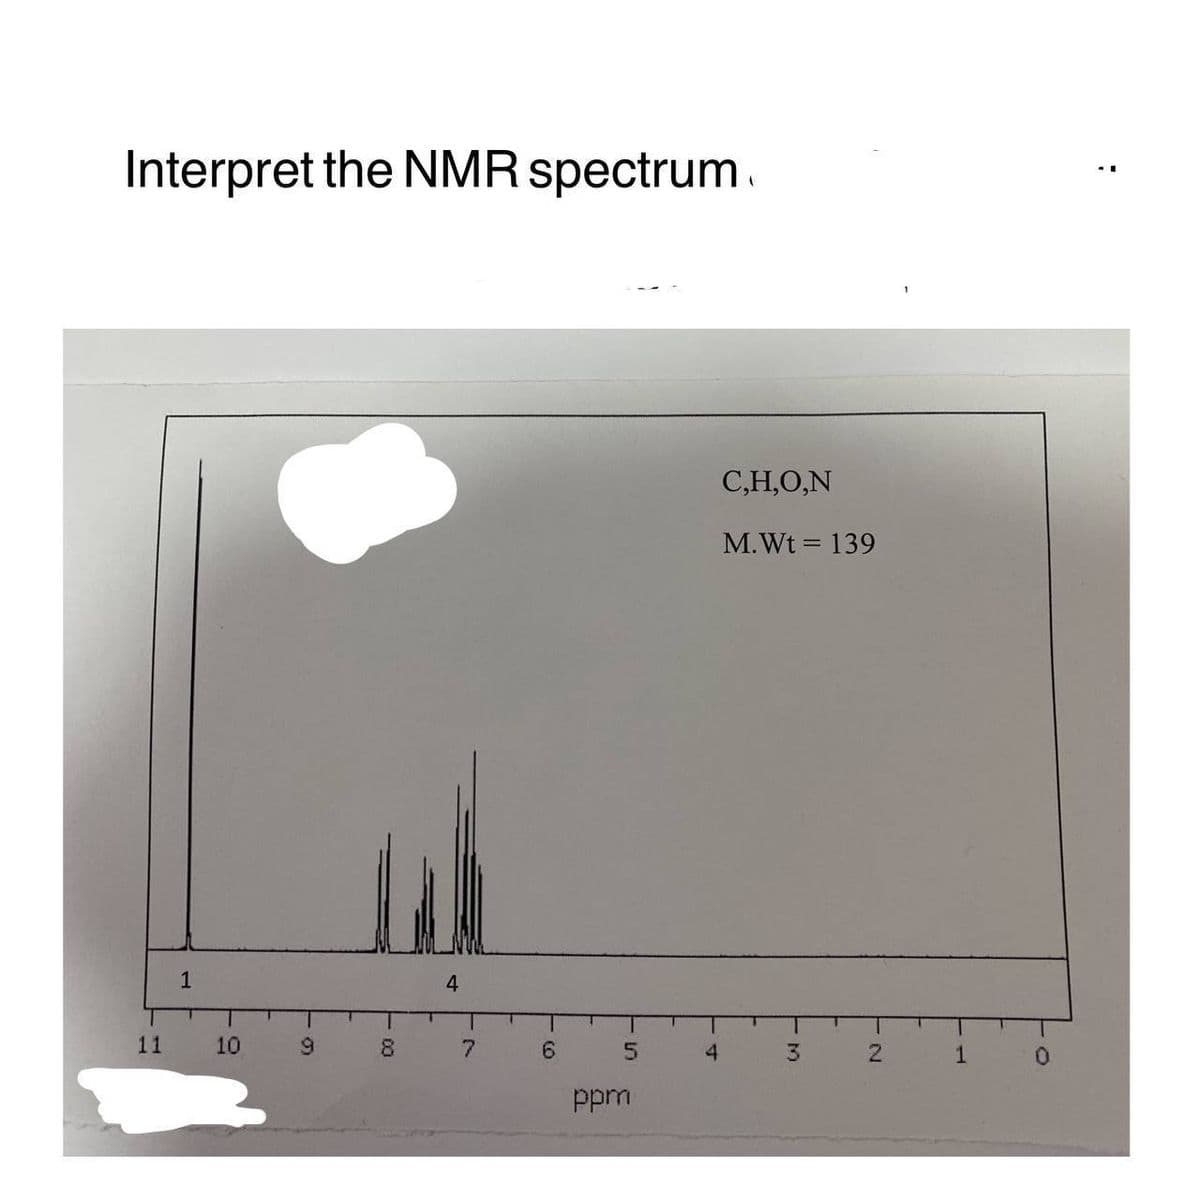 Interpret the NMR spectrum
11
1
10
69
9
8
00
4
7
6
5
ppm
4
C,H,O,N
M. Wt = 139
3
N
1
0